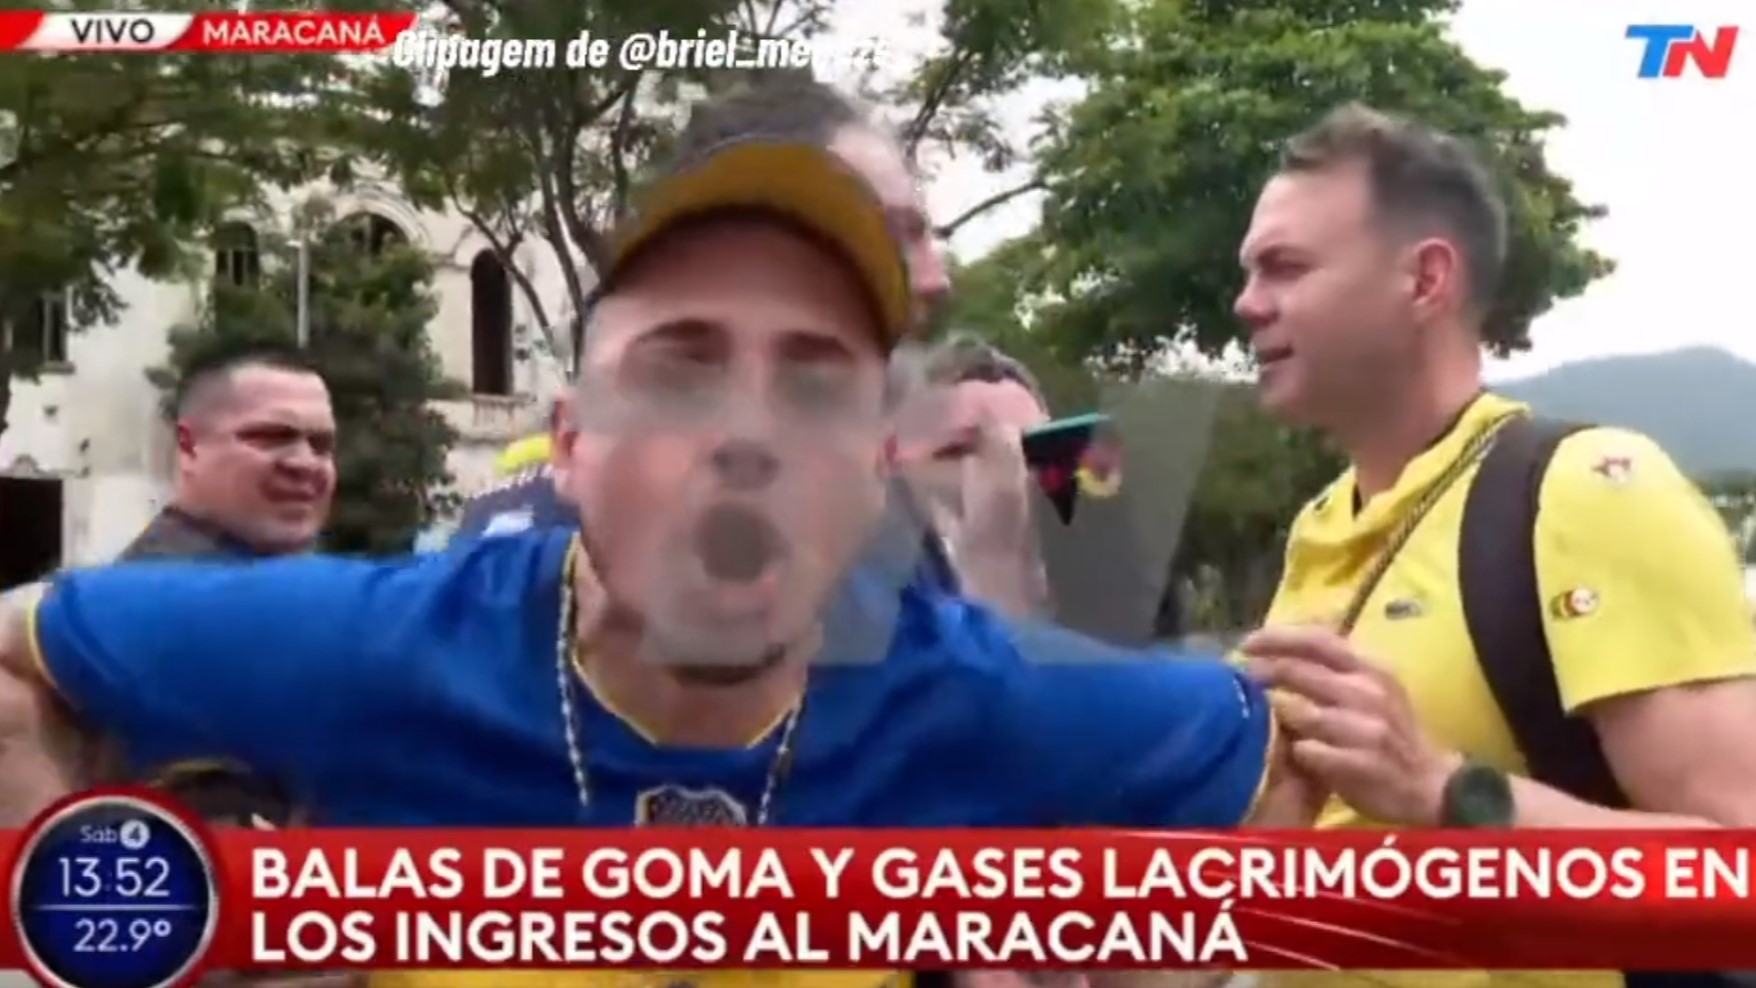 Polícia do Rio procura torcedor do Boca Juniors por insultos racistas em entrevista a TV